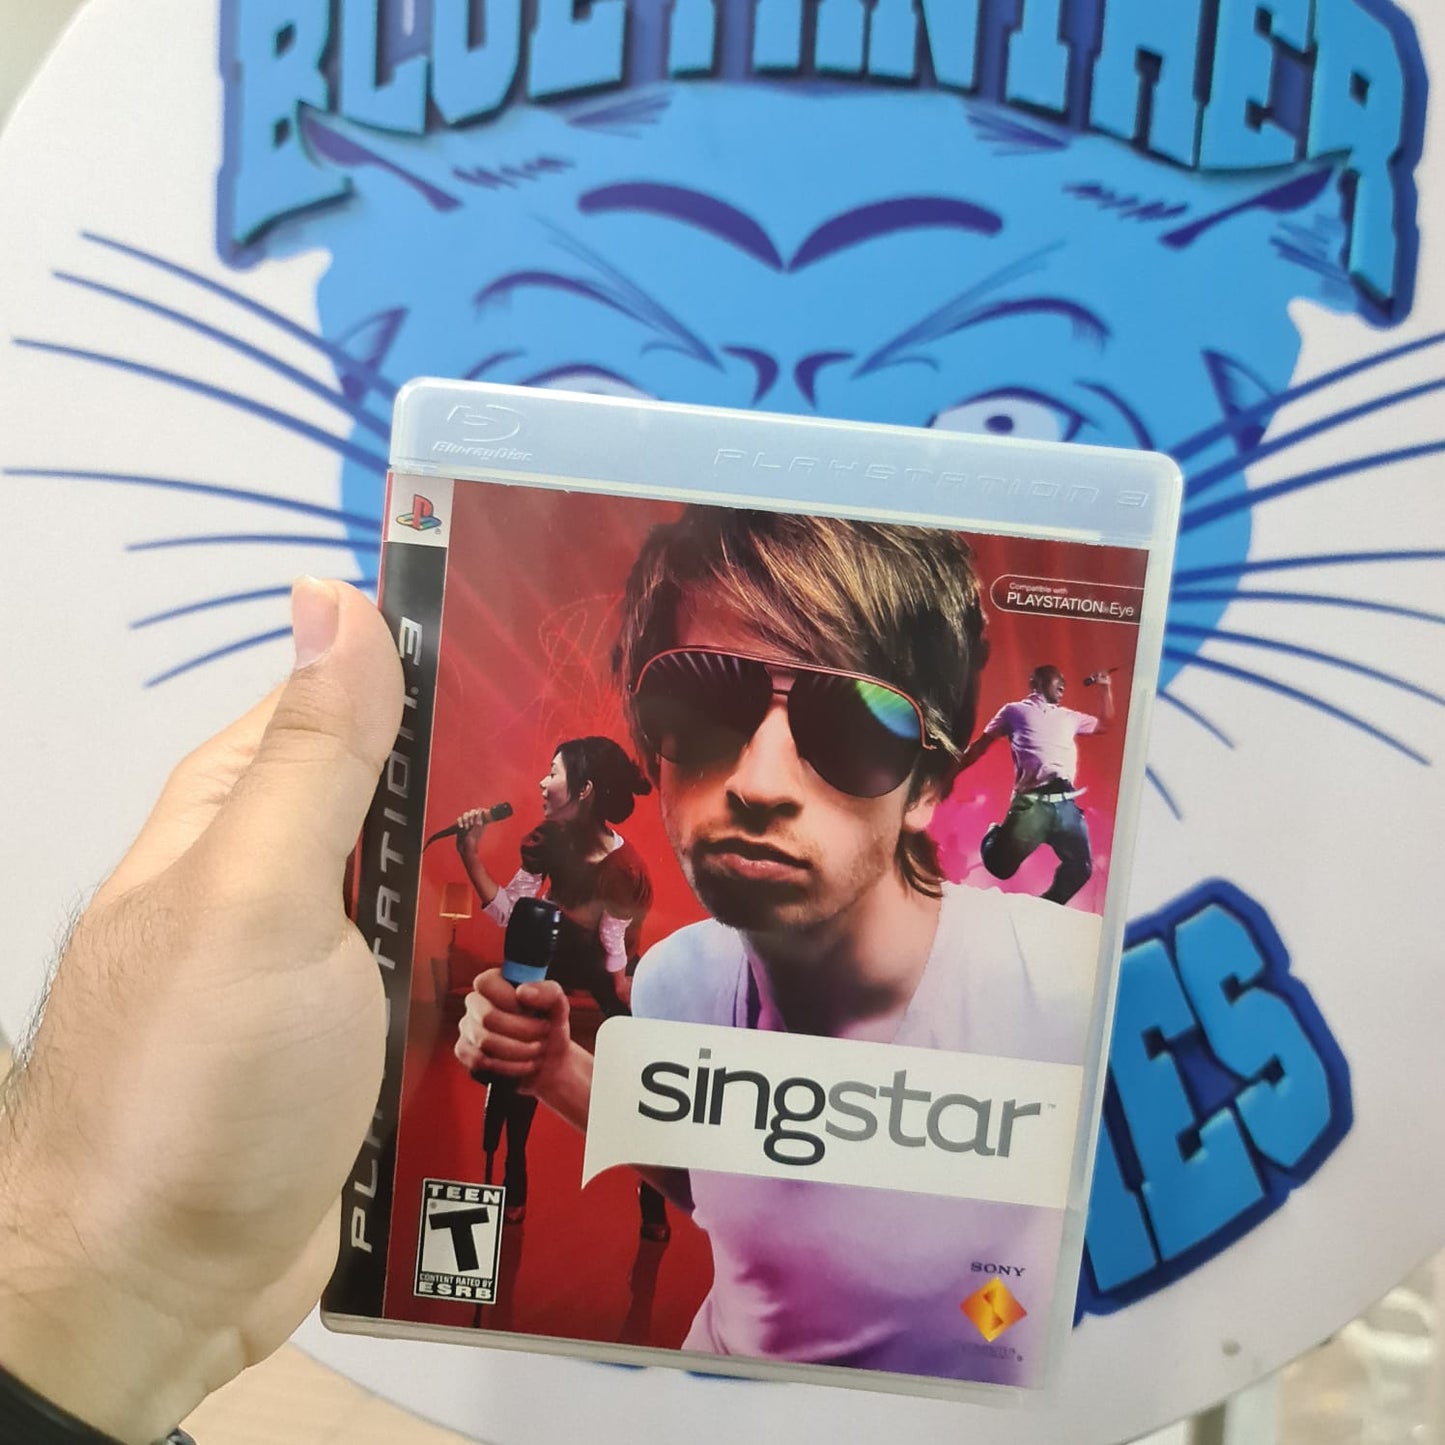 Singstar - Playstation 3